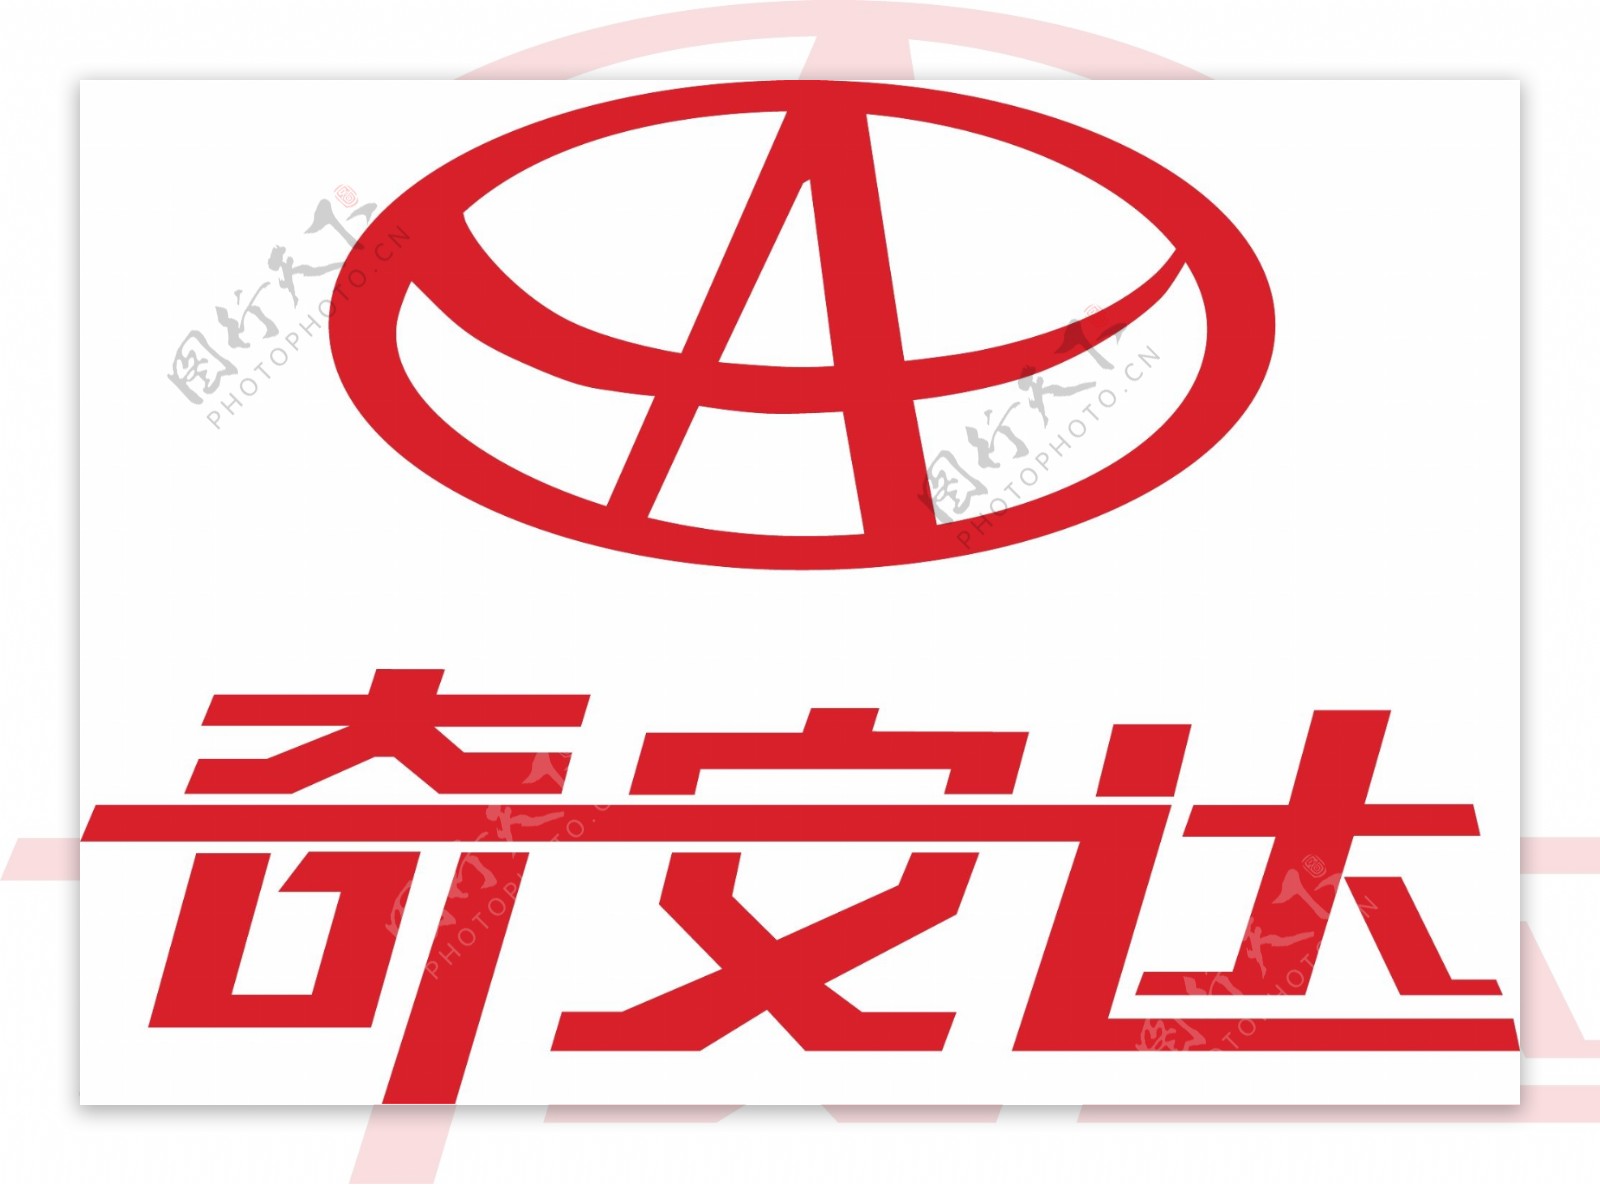 奇安达logo图片